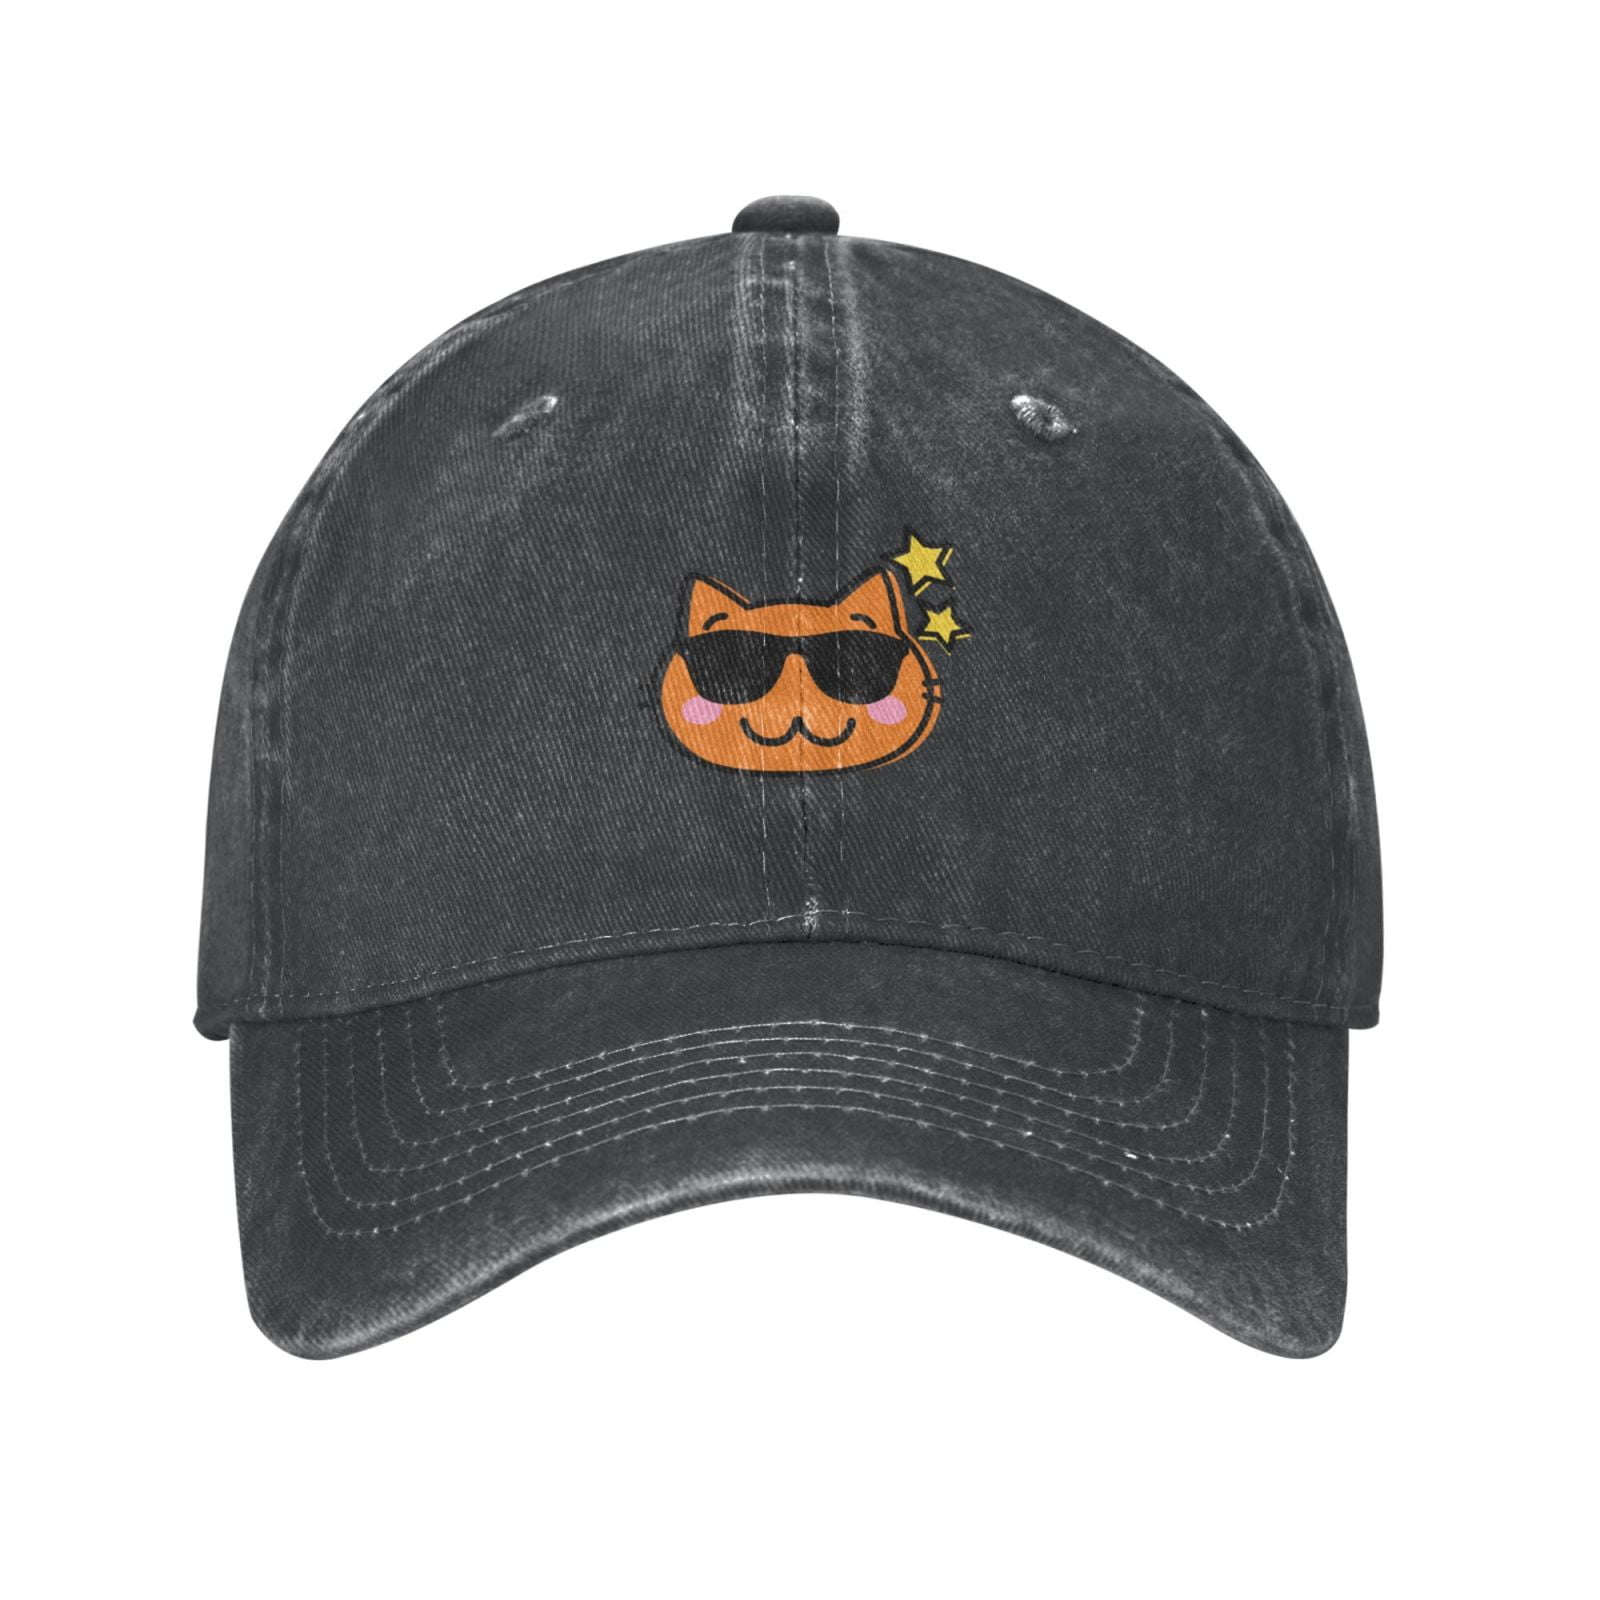 Mens Baseball Cap, Outdoor Casual Heather Brim Happy Adjustable Cat- Cap - Cowboy Cartoon Deep Sports Classic Hat Hat, Curved